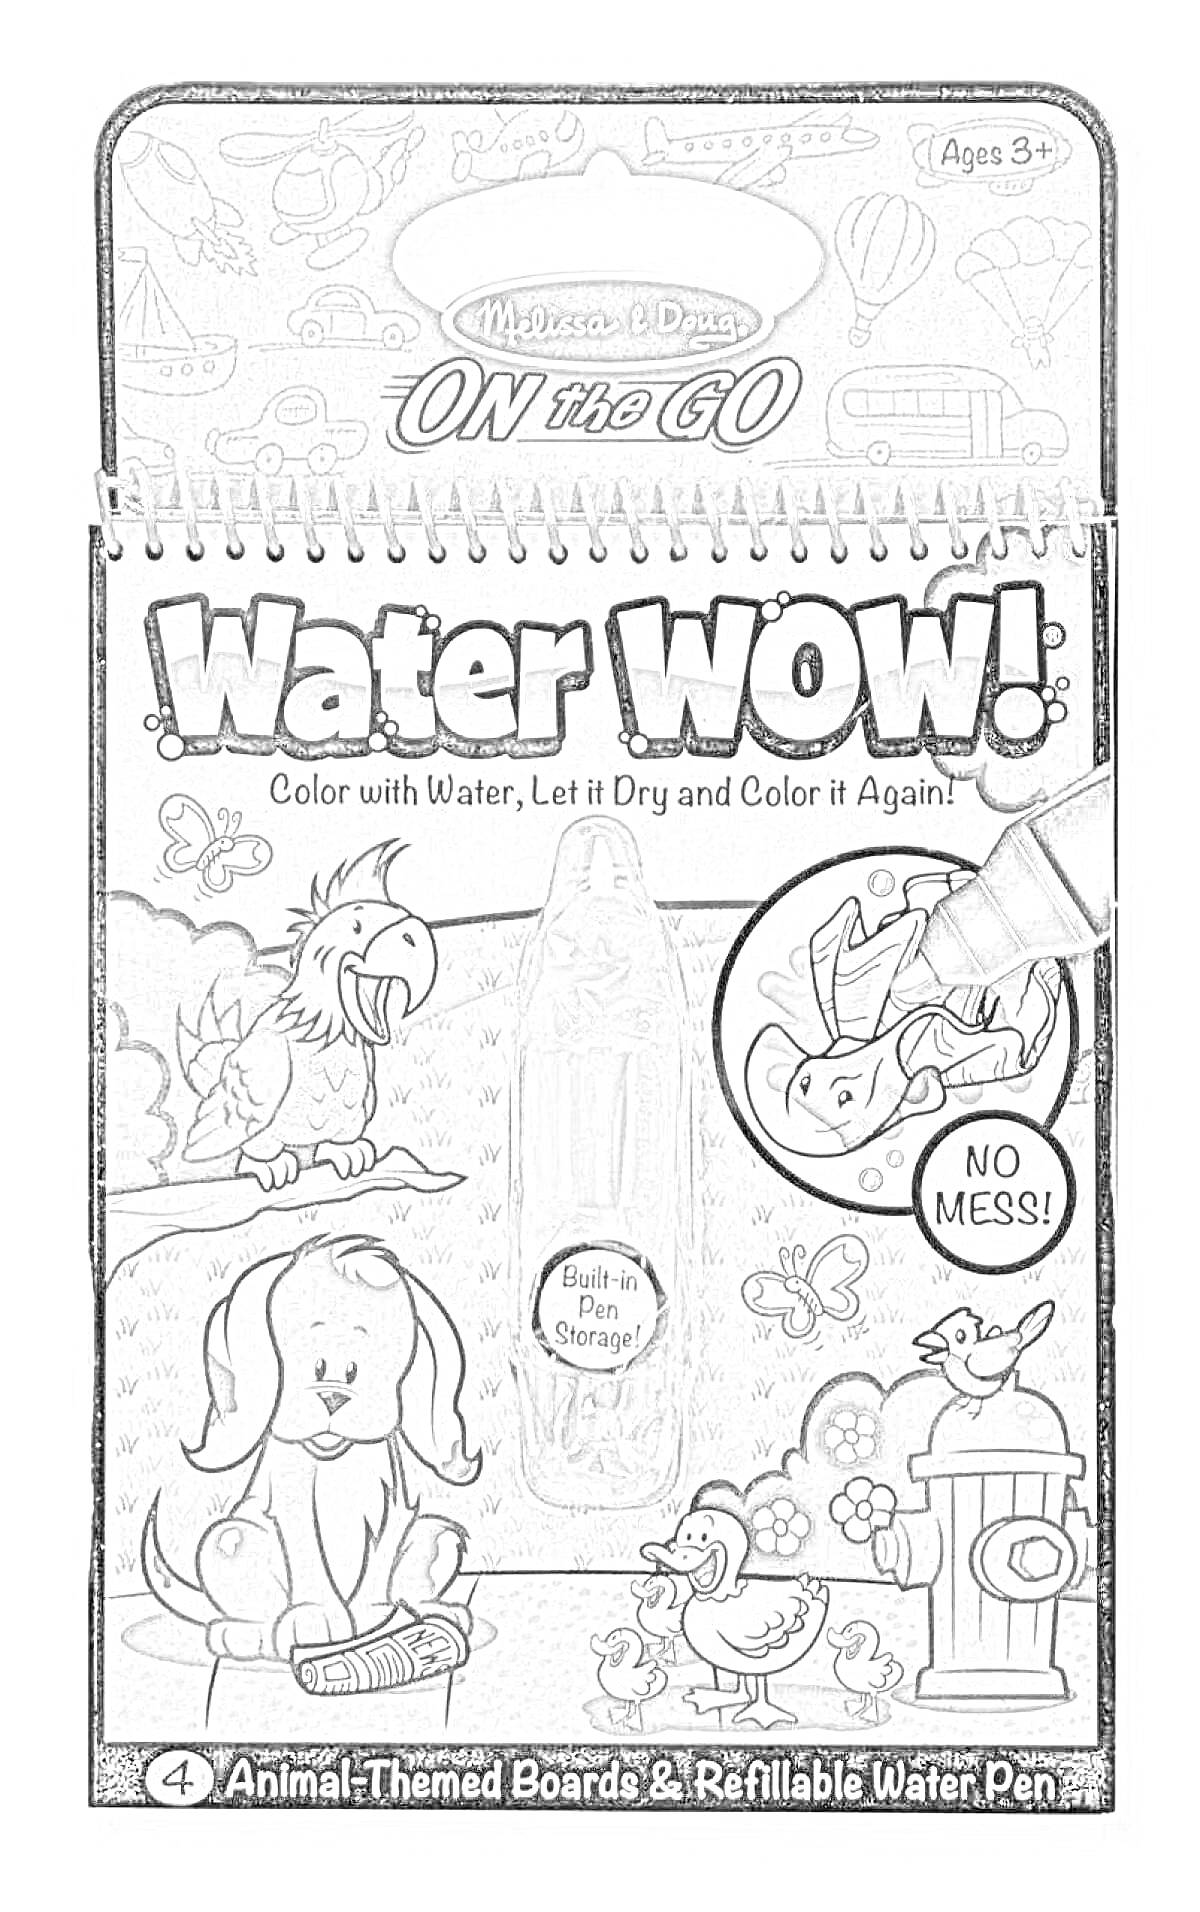 Раскраска Water WOW! Animal-Themed Boards & Refillable Water Pen от Melissa & Doug, водная раскраска, включающая темы с животными, собаку, птицу, домик на заднем плане и перо для рисования водой.